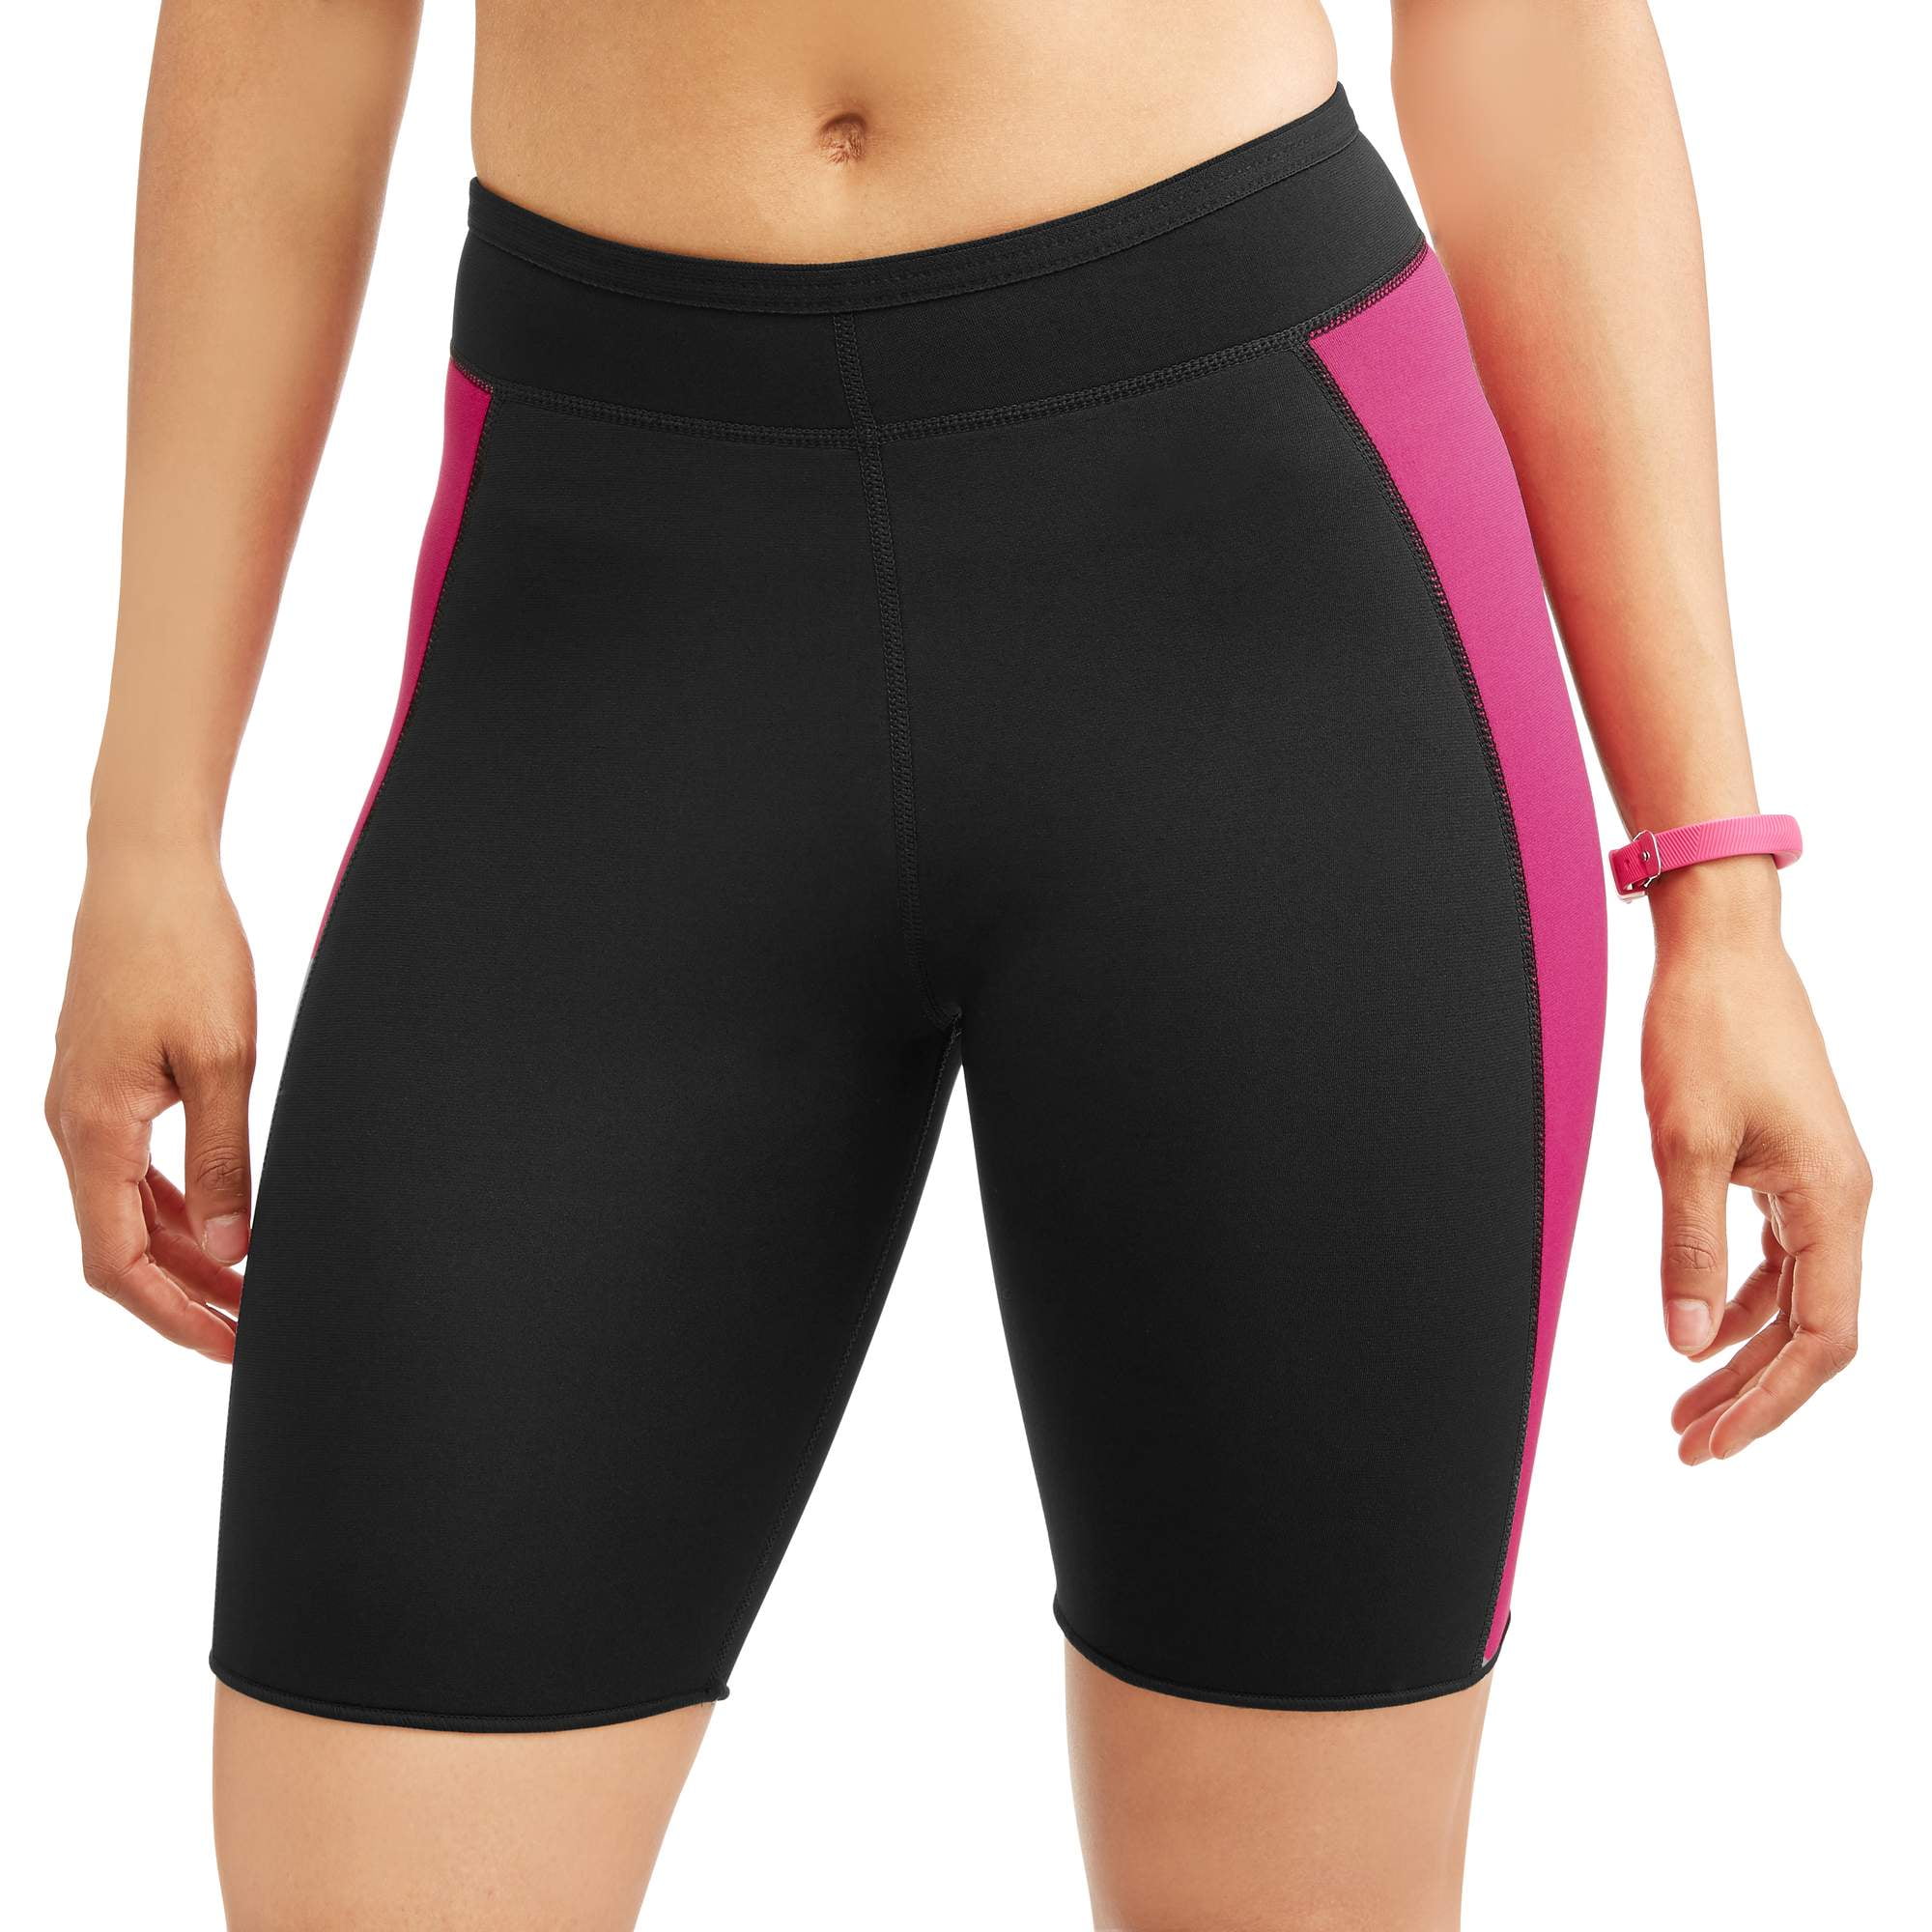 Women's Slimming Neoprene Activewear Shorts - Walmart.com